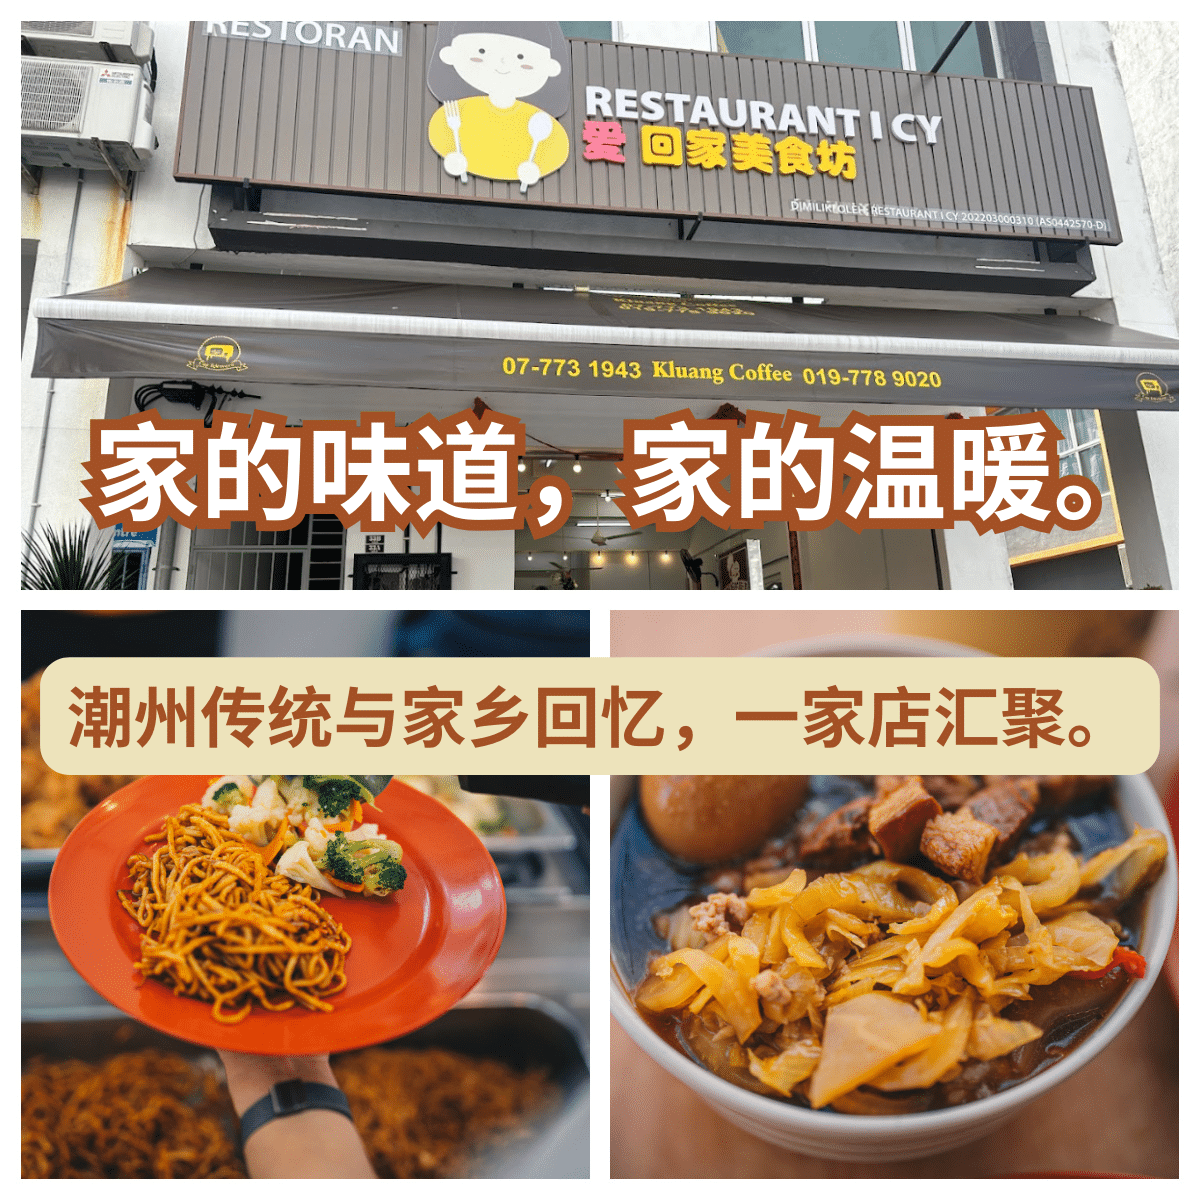 "家的温馨：" 爱回家美食坊 "带您品味正宗潮州家常菜肴！" | Best Johor Food